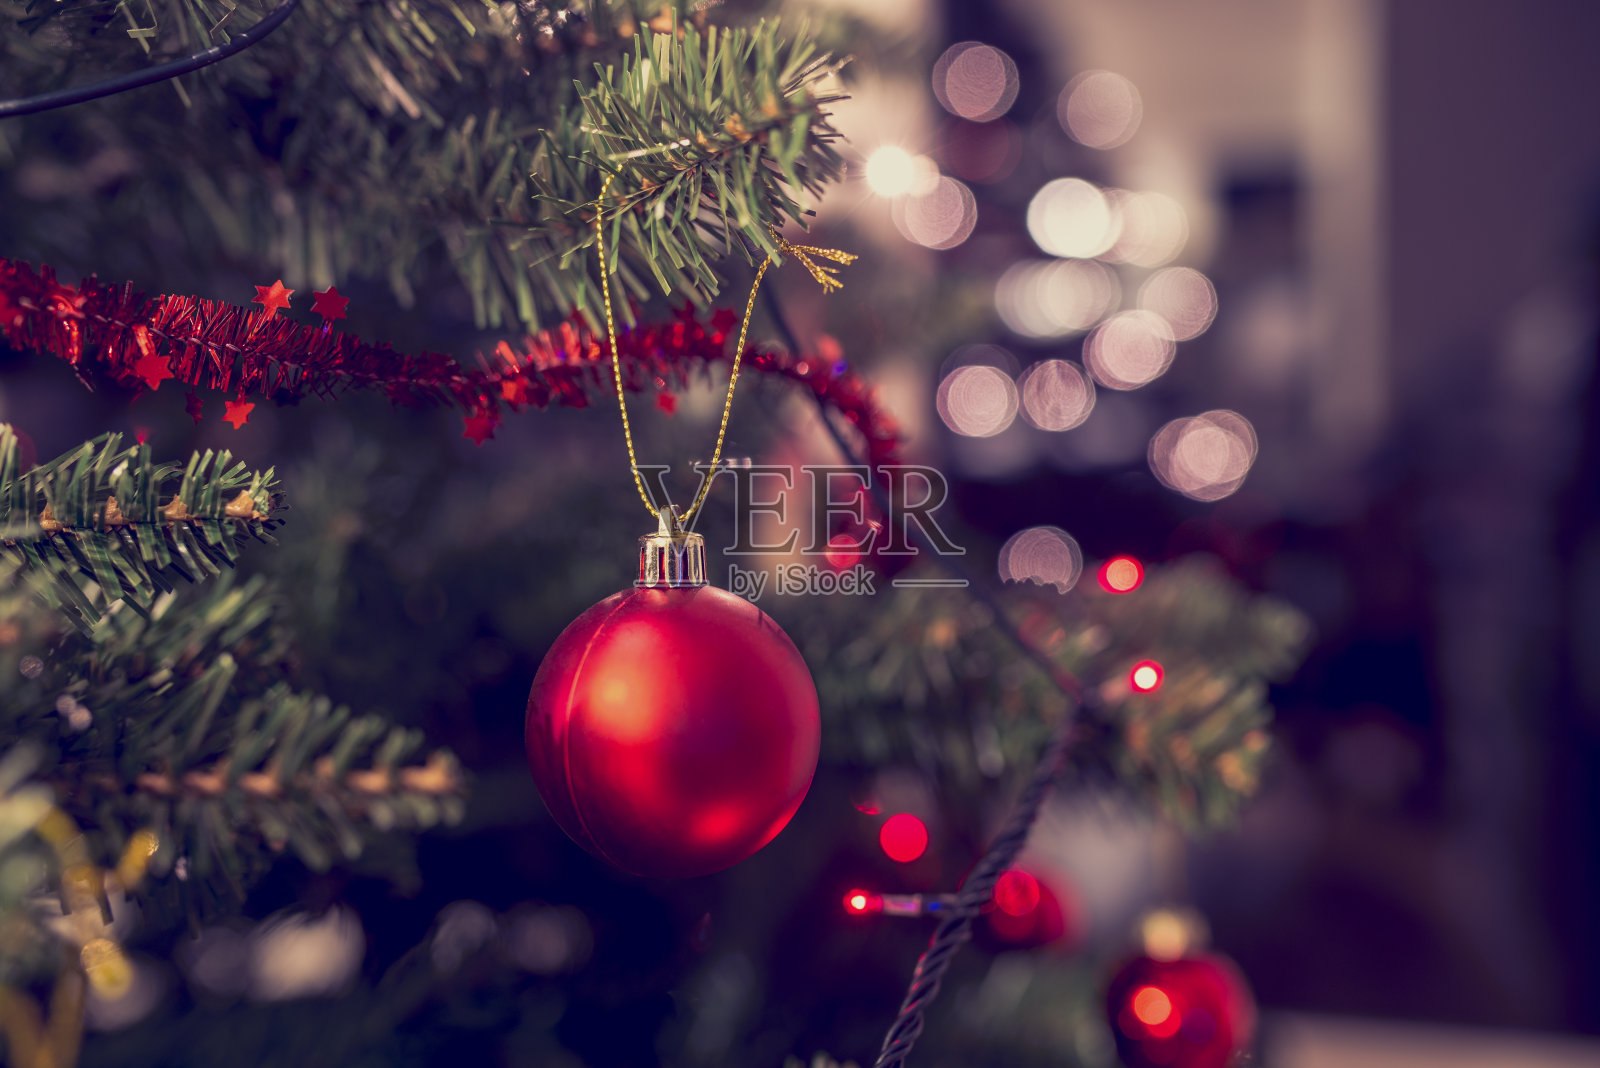 红色小装饰品挂在圣诞树上的特写照片摄影图片